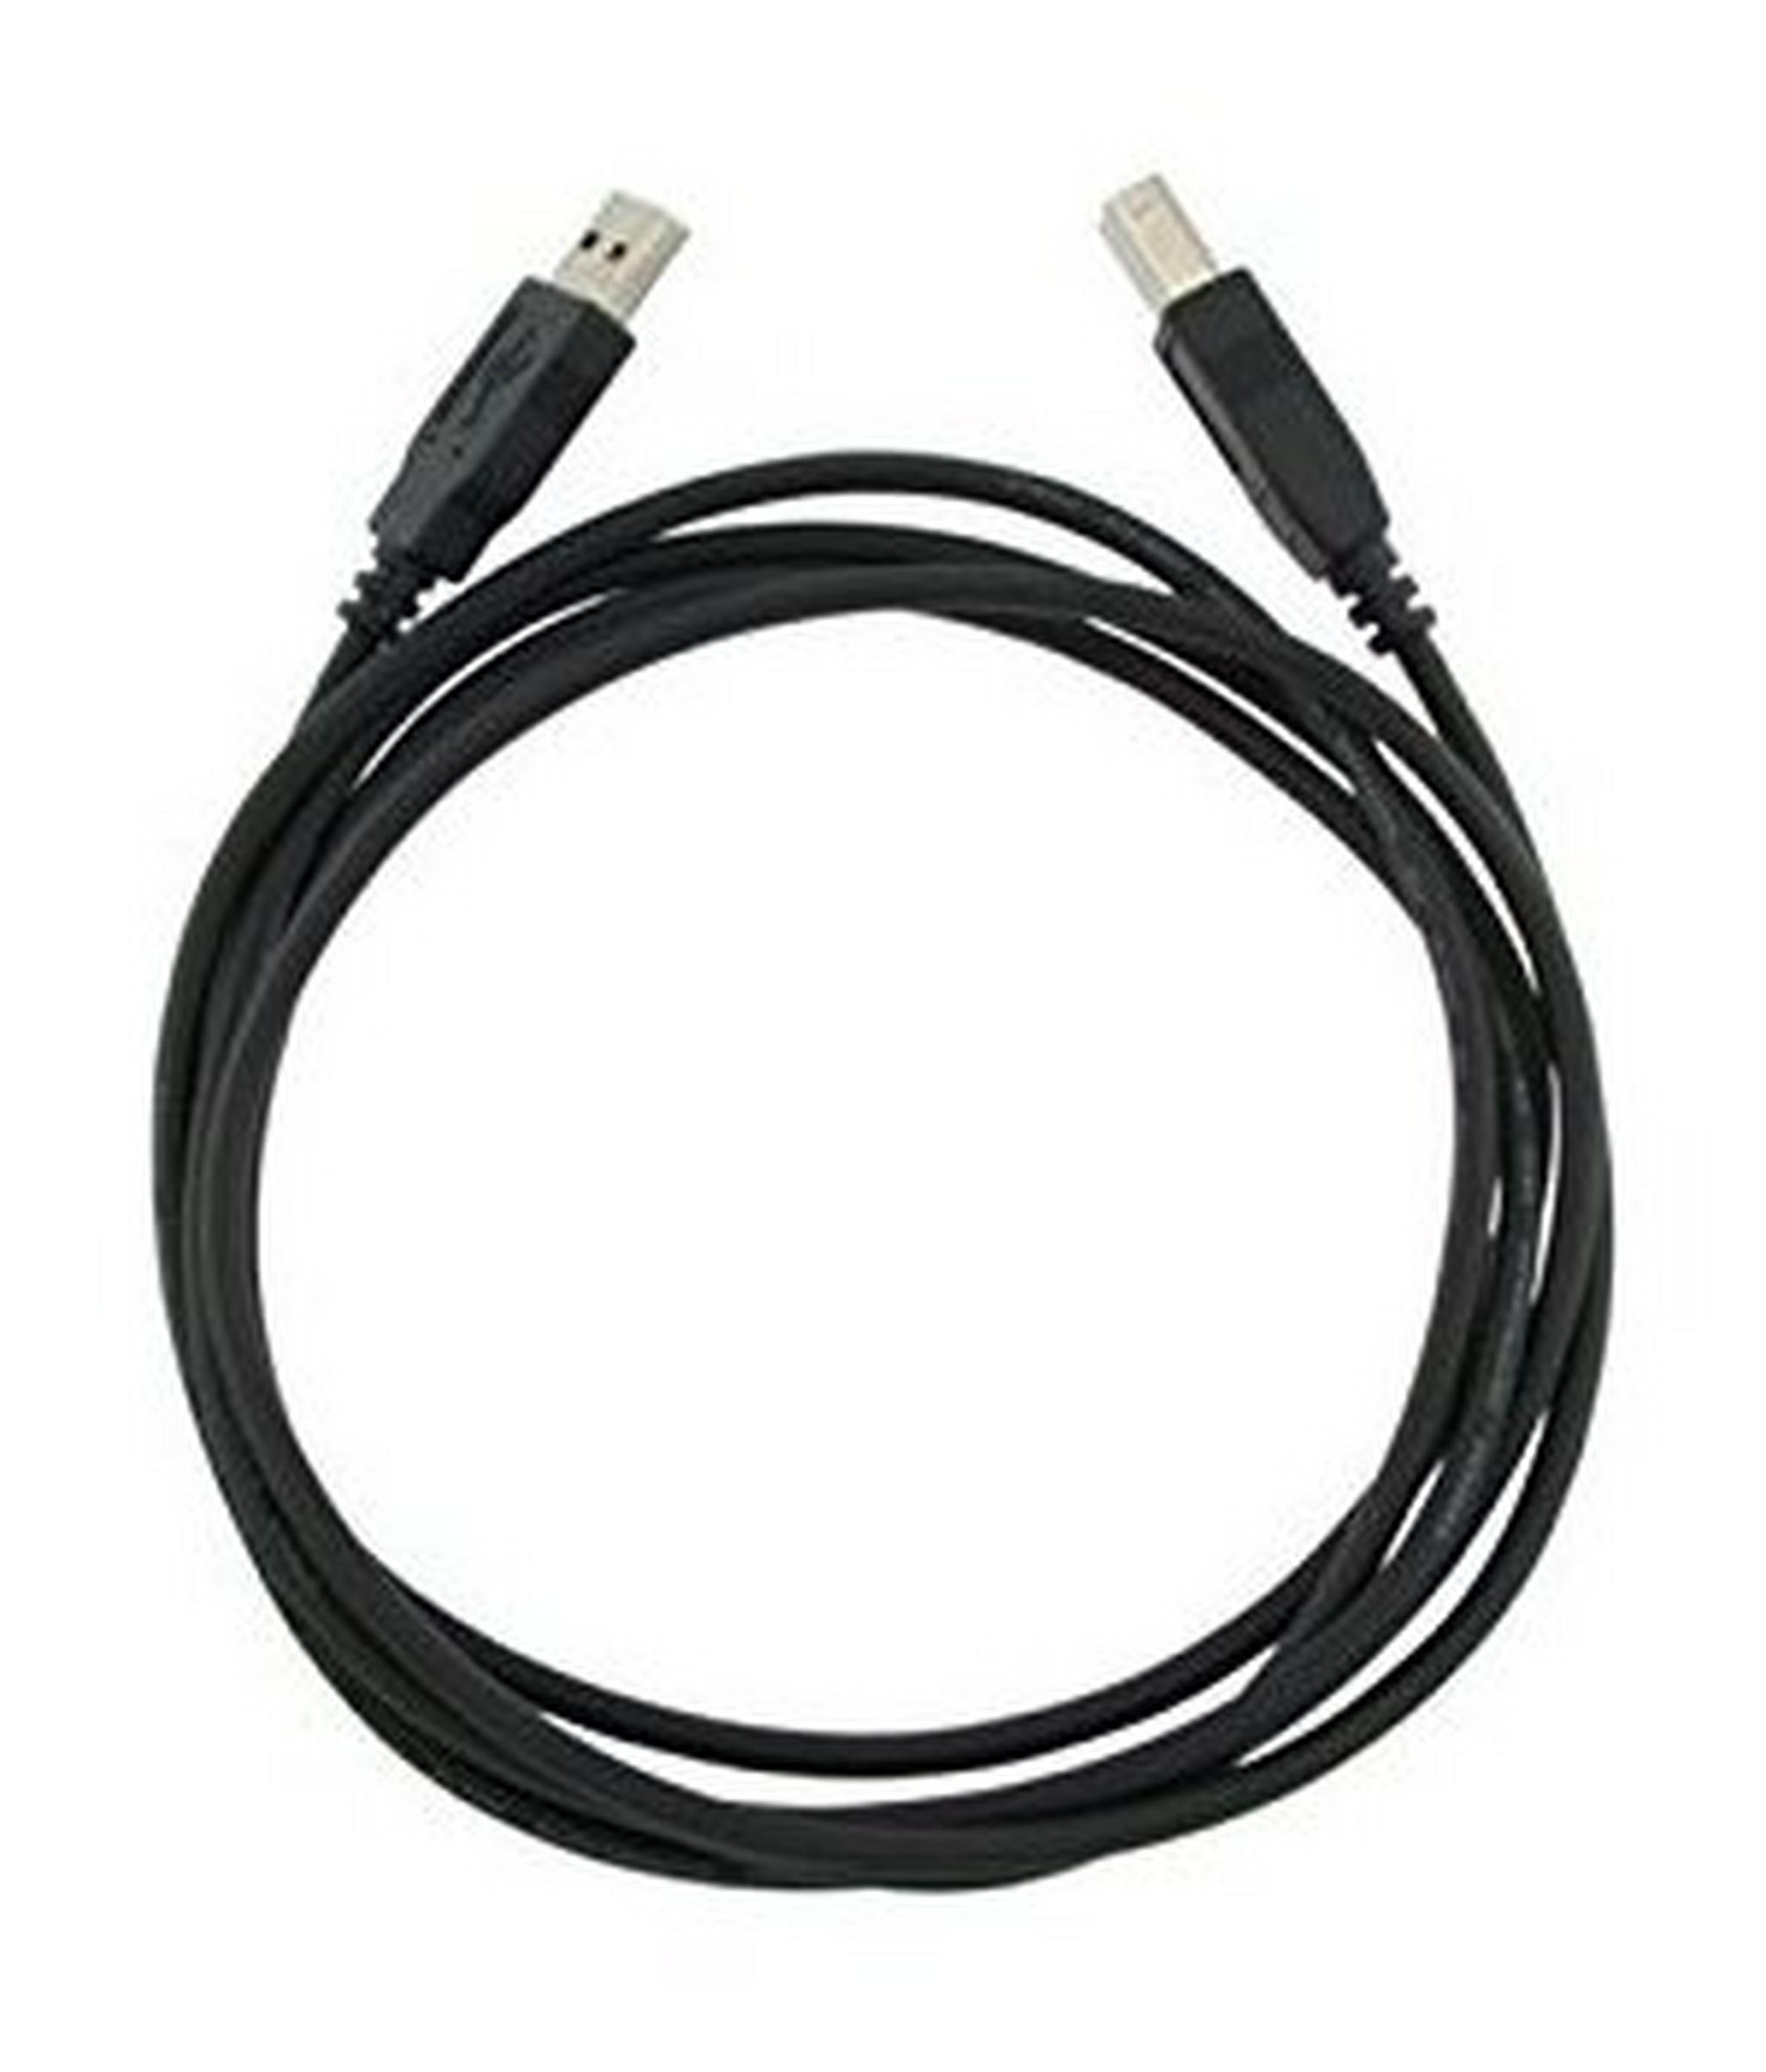 EQ 2M Printer Cable (OM06AB) - Black